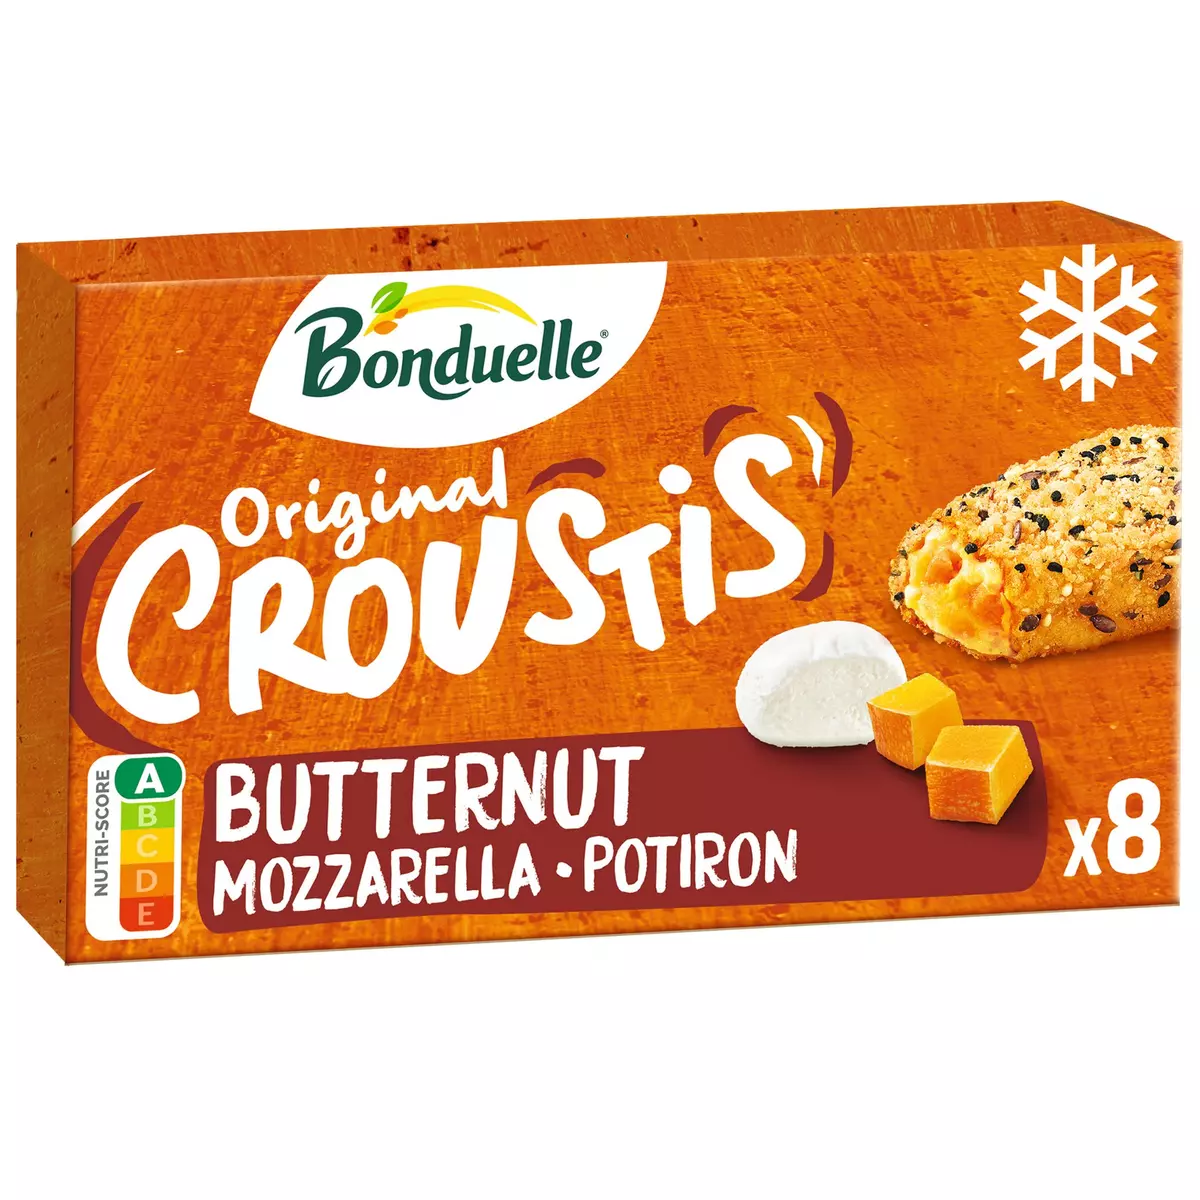 BONDUELLE Original croustis butternut 8 pièces 305g